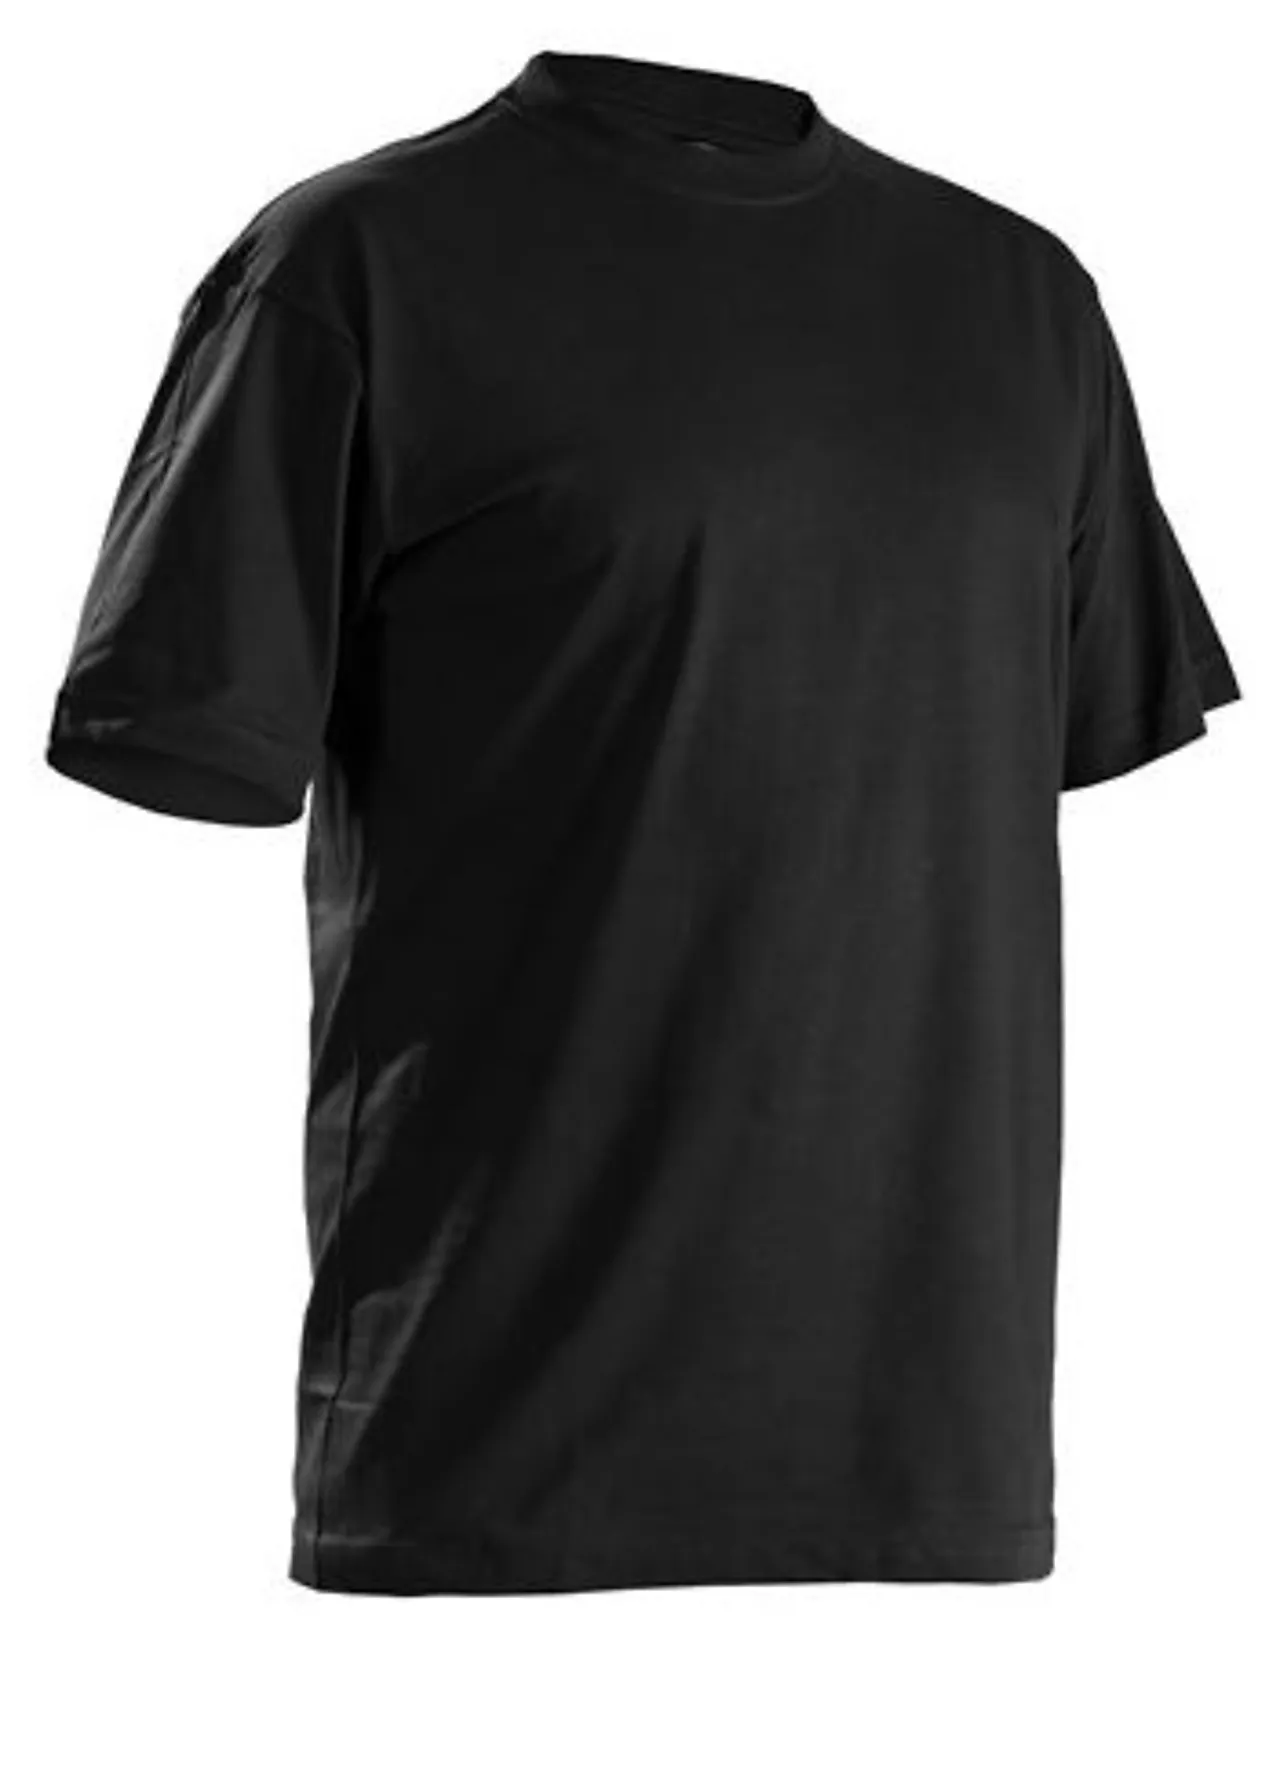 T-skjorte 5 pakk 332510429900l 5 pakk svart null - null - 3 - Miniatyr